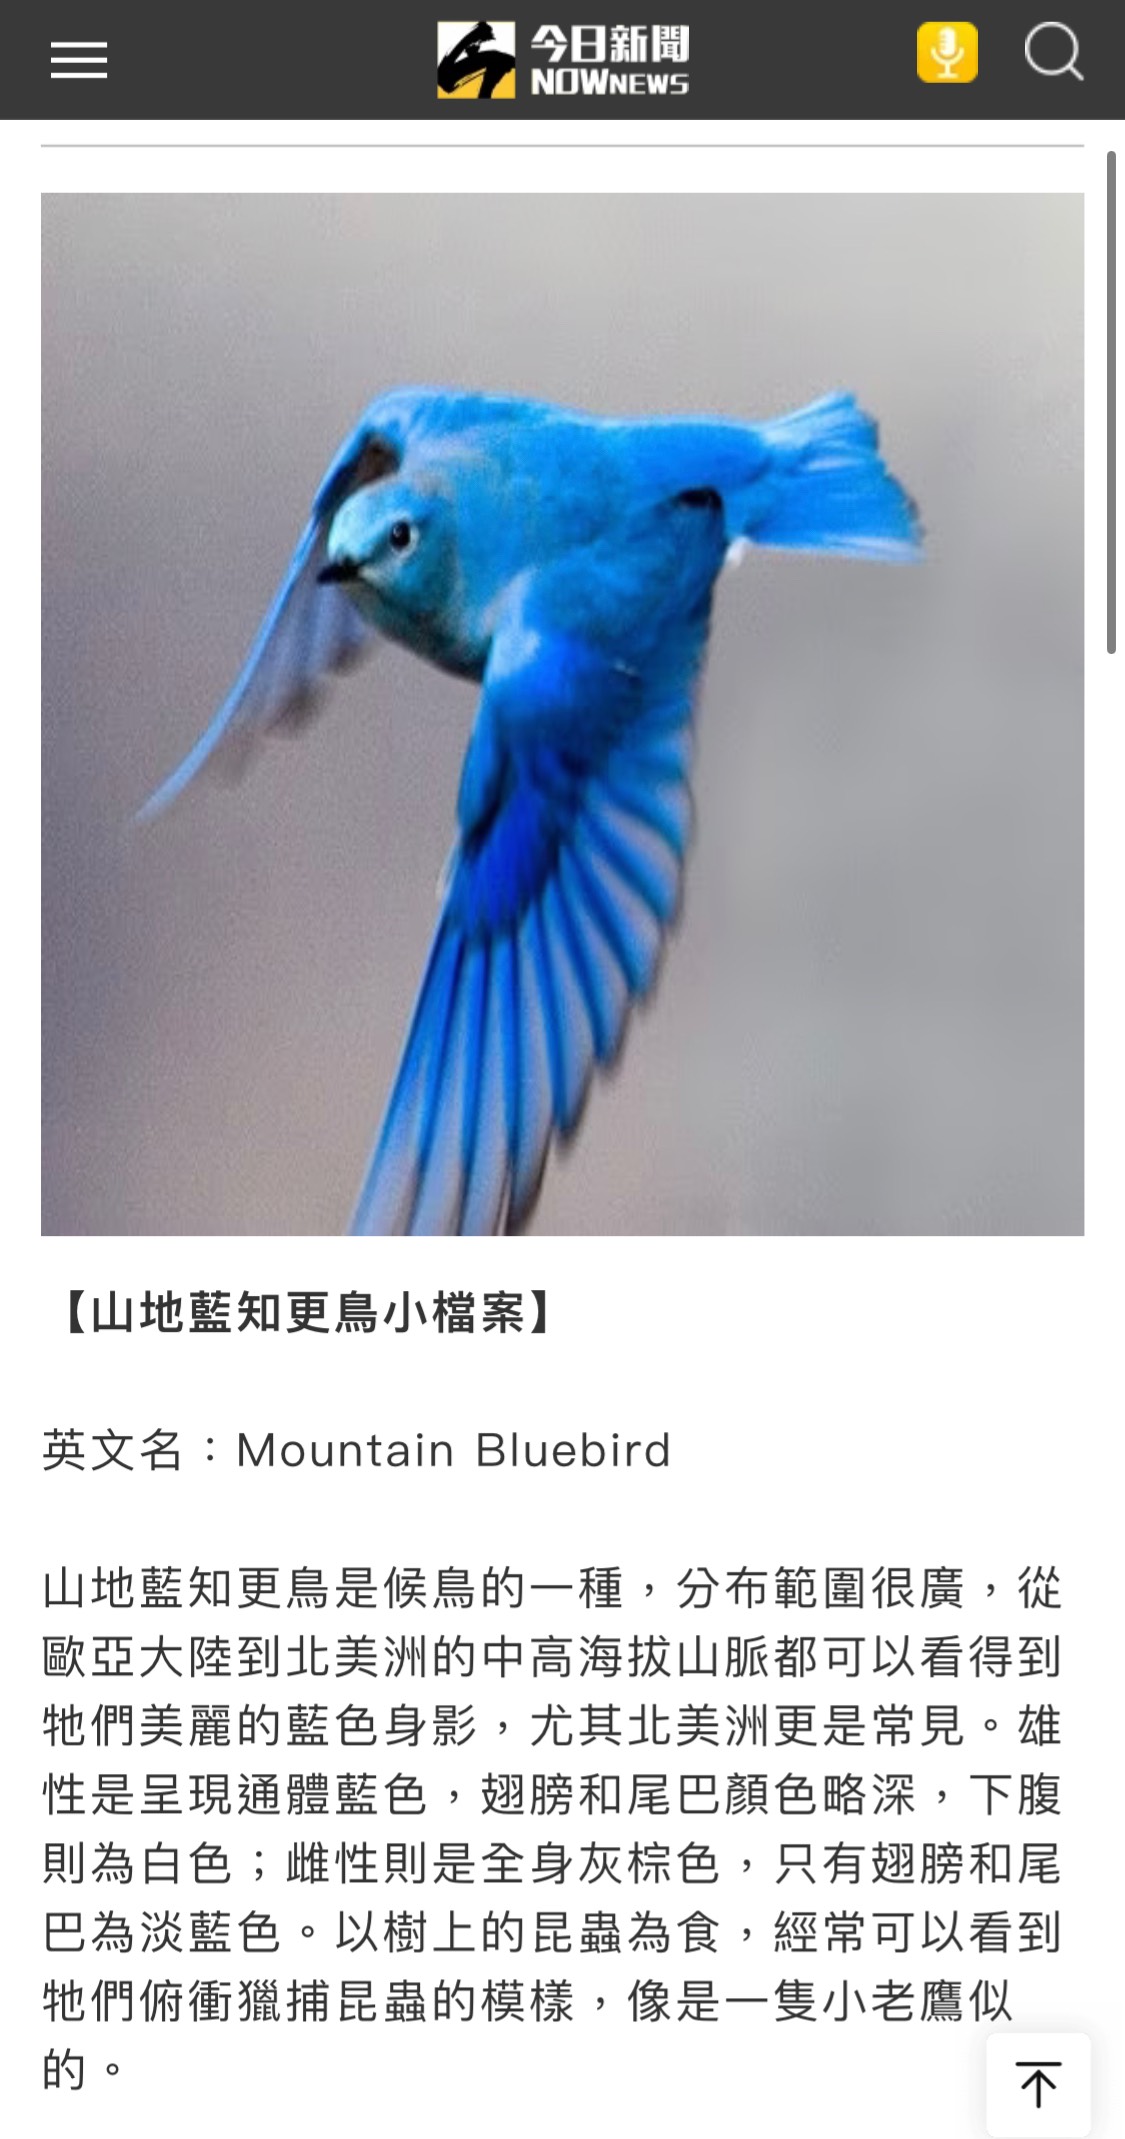 [問卦] 青鳥是夜行性動物嗎？